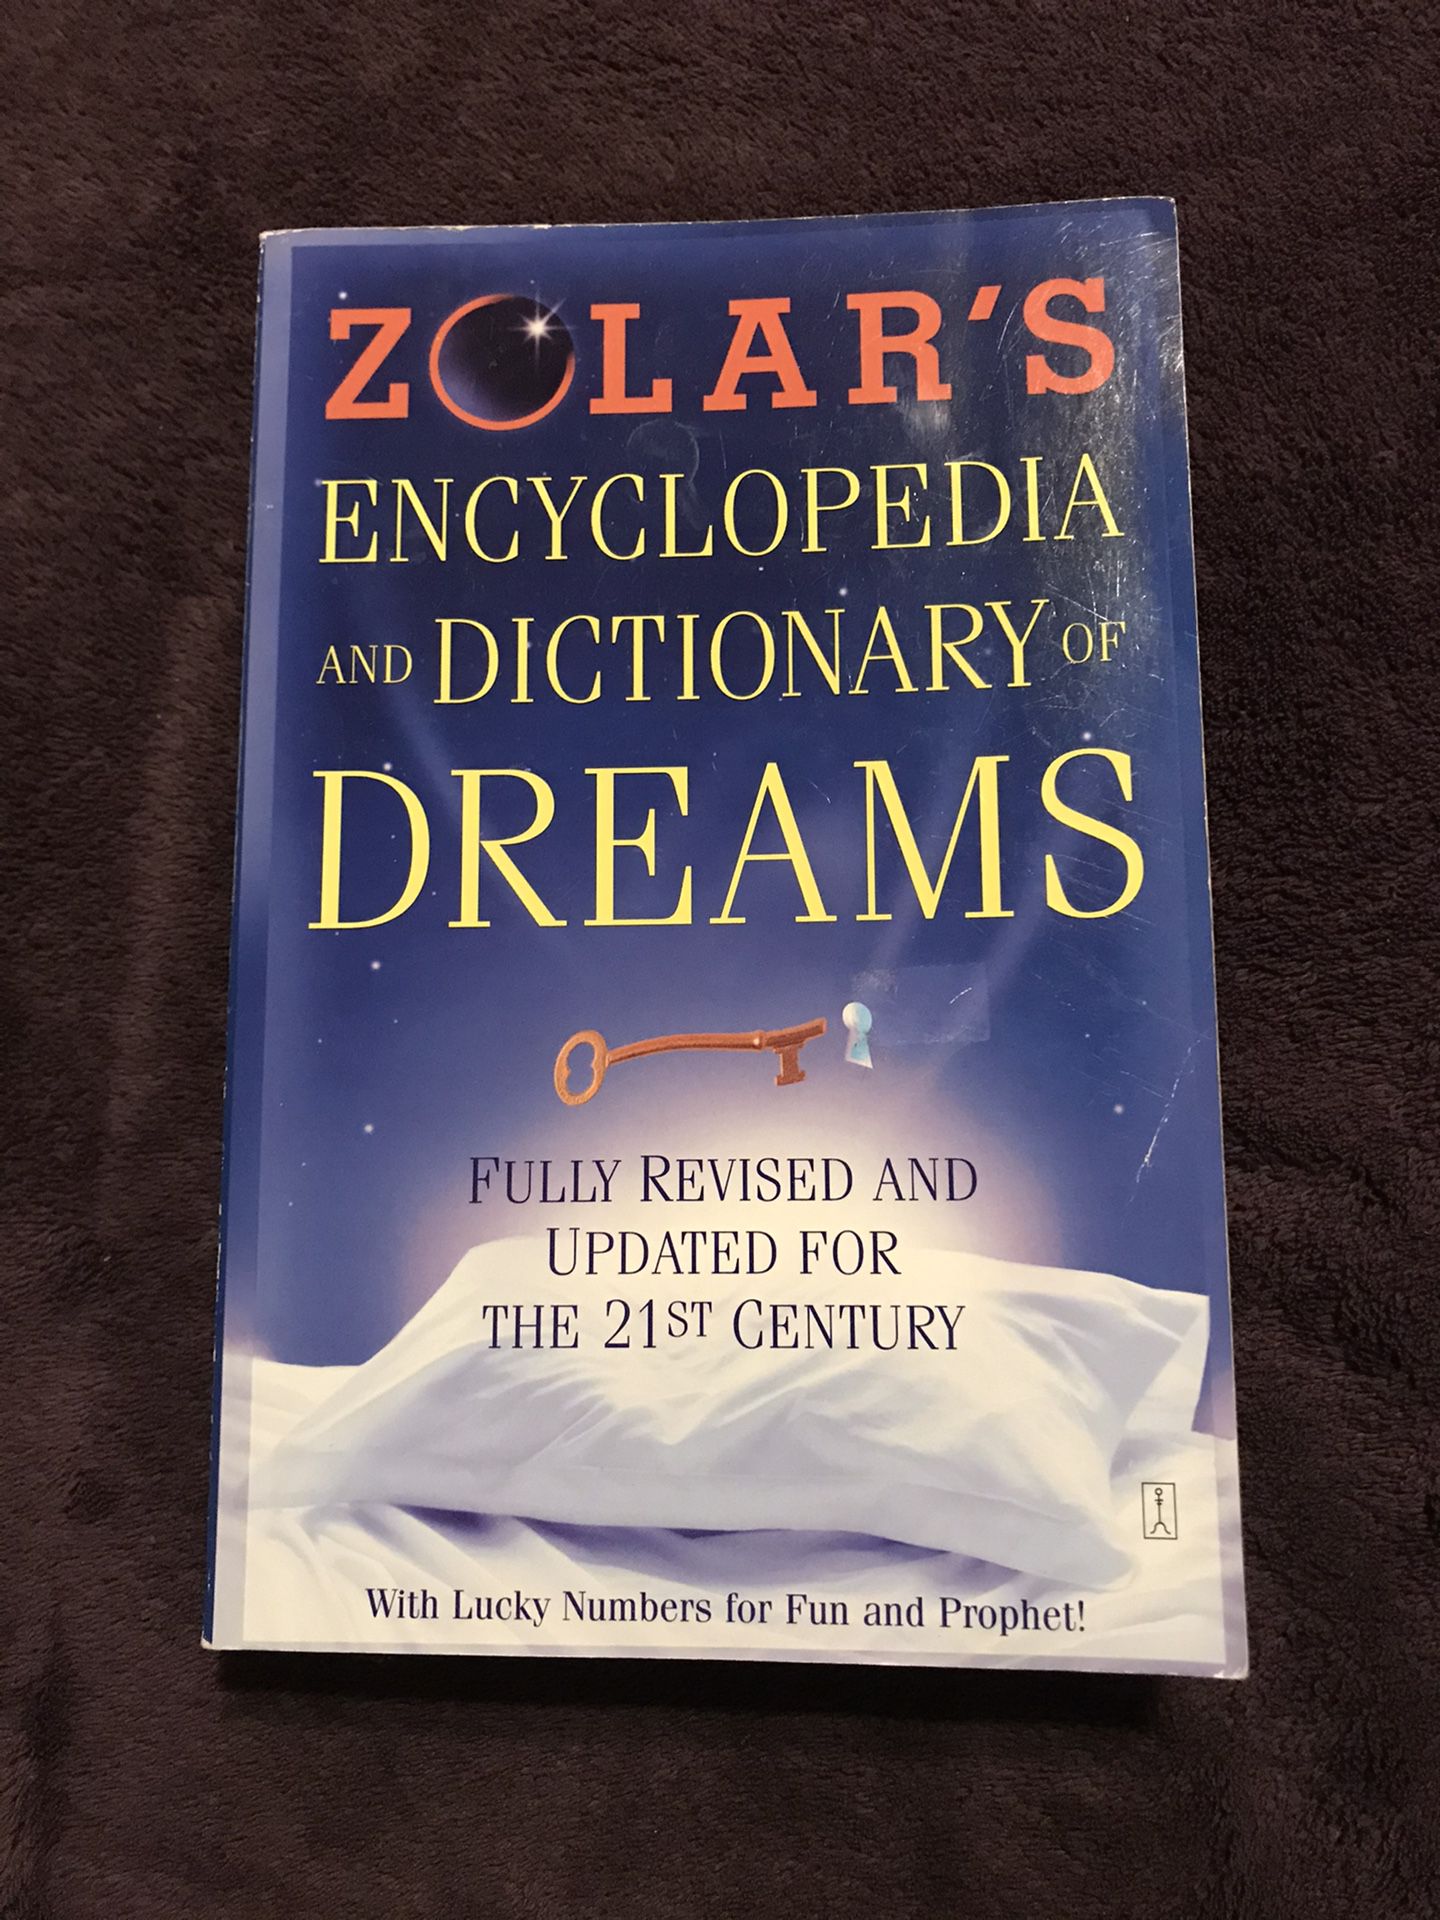 Zolar’s Encyclopedia and Dictionary of Dreams